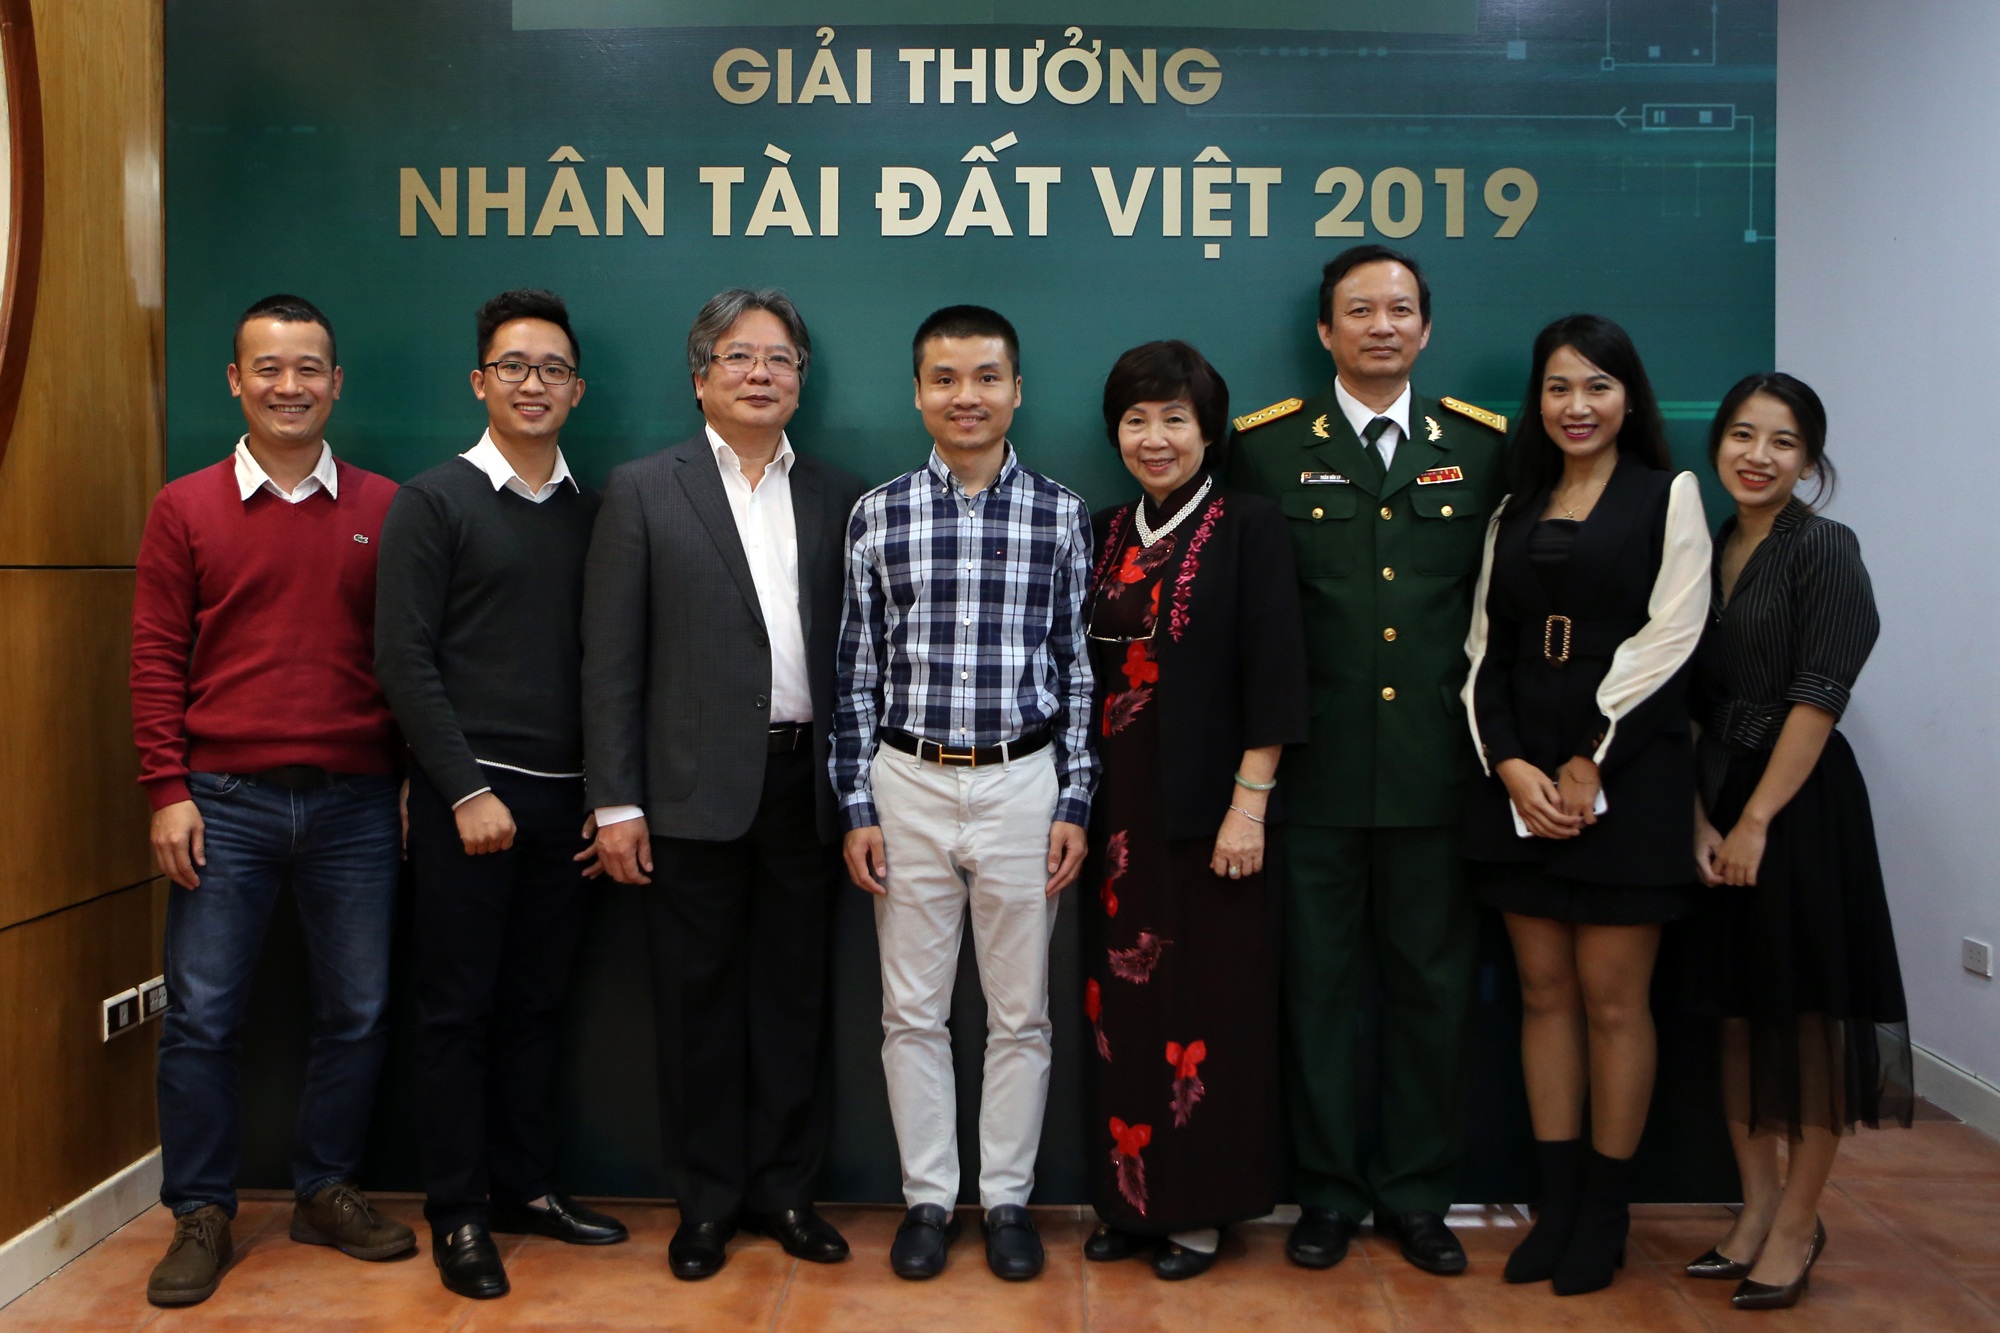 Quán quân Nhân tài Đất Việt 2019 hân hoan gặp lại nhau sau Lễ trao giải